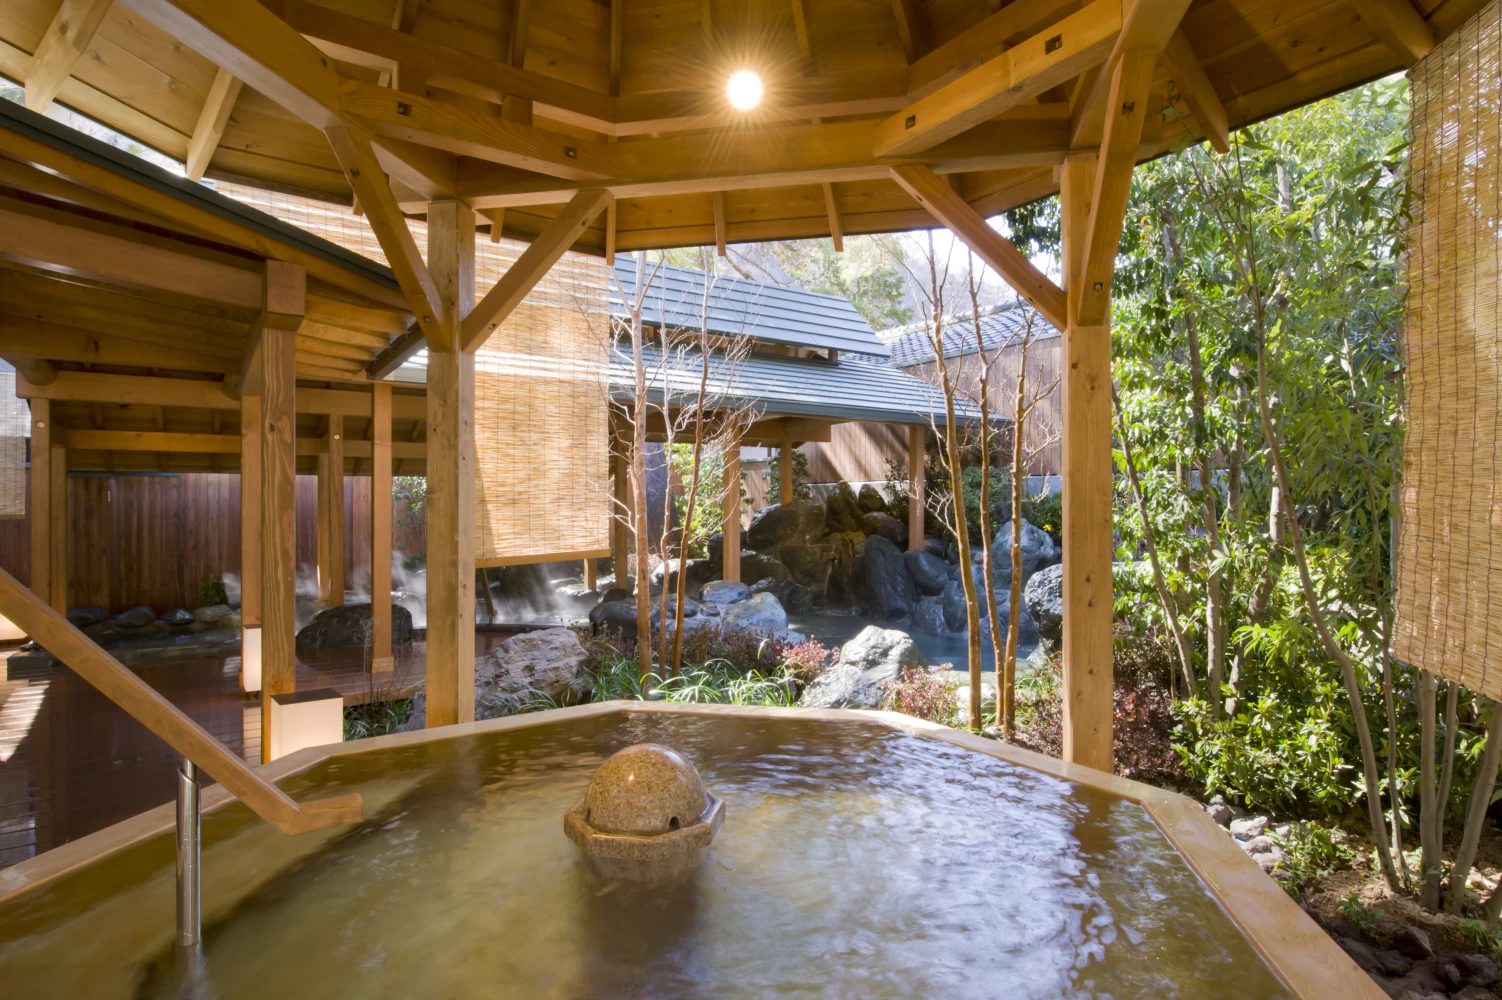 武田信玄の隠し湯として知られる「下部温泉郷」は1200年以上の歴史ある名湯